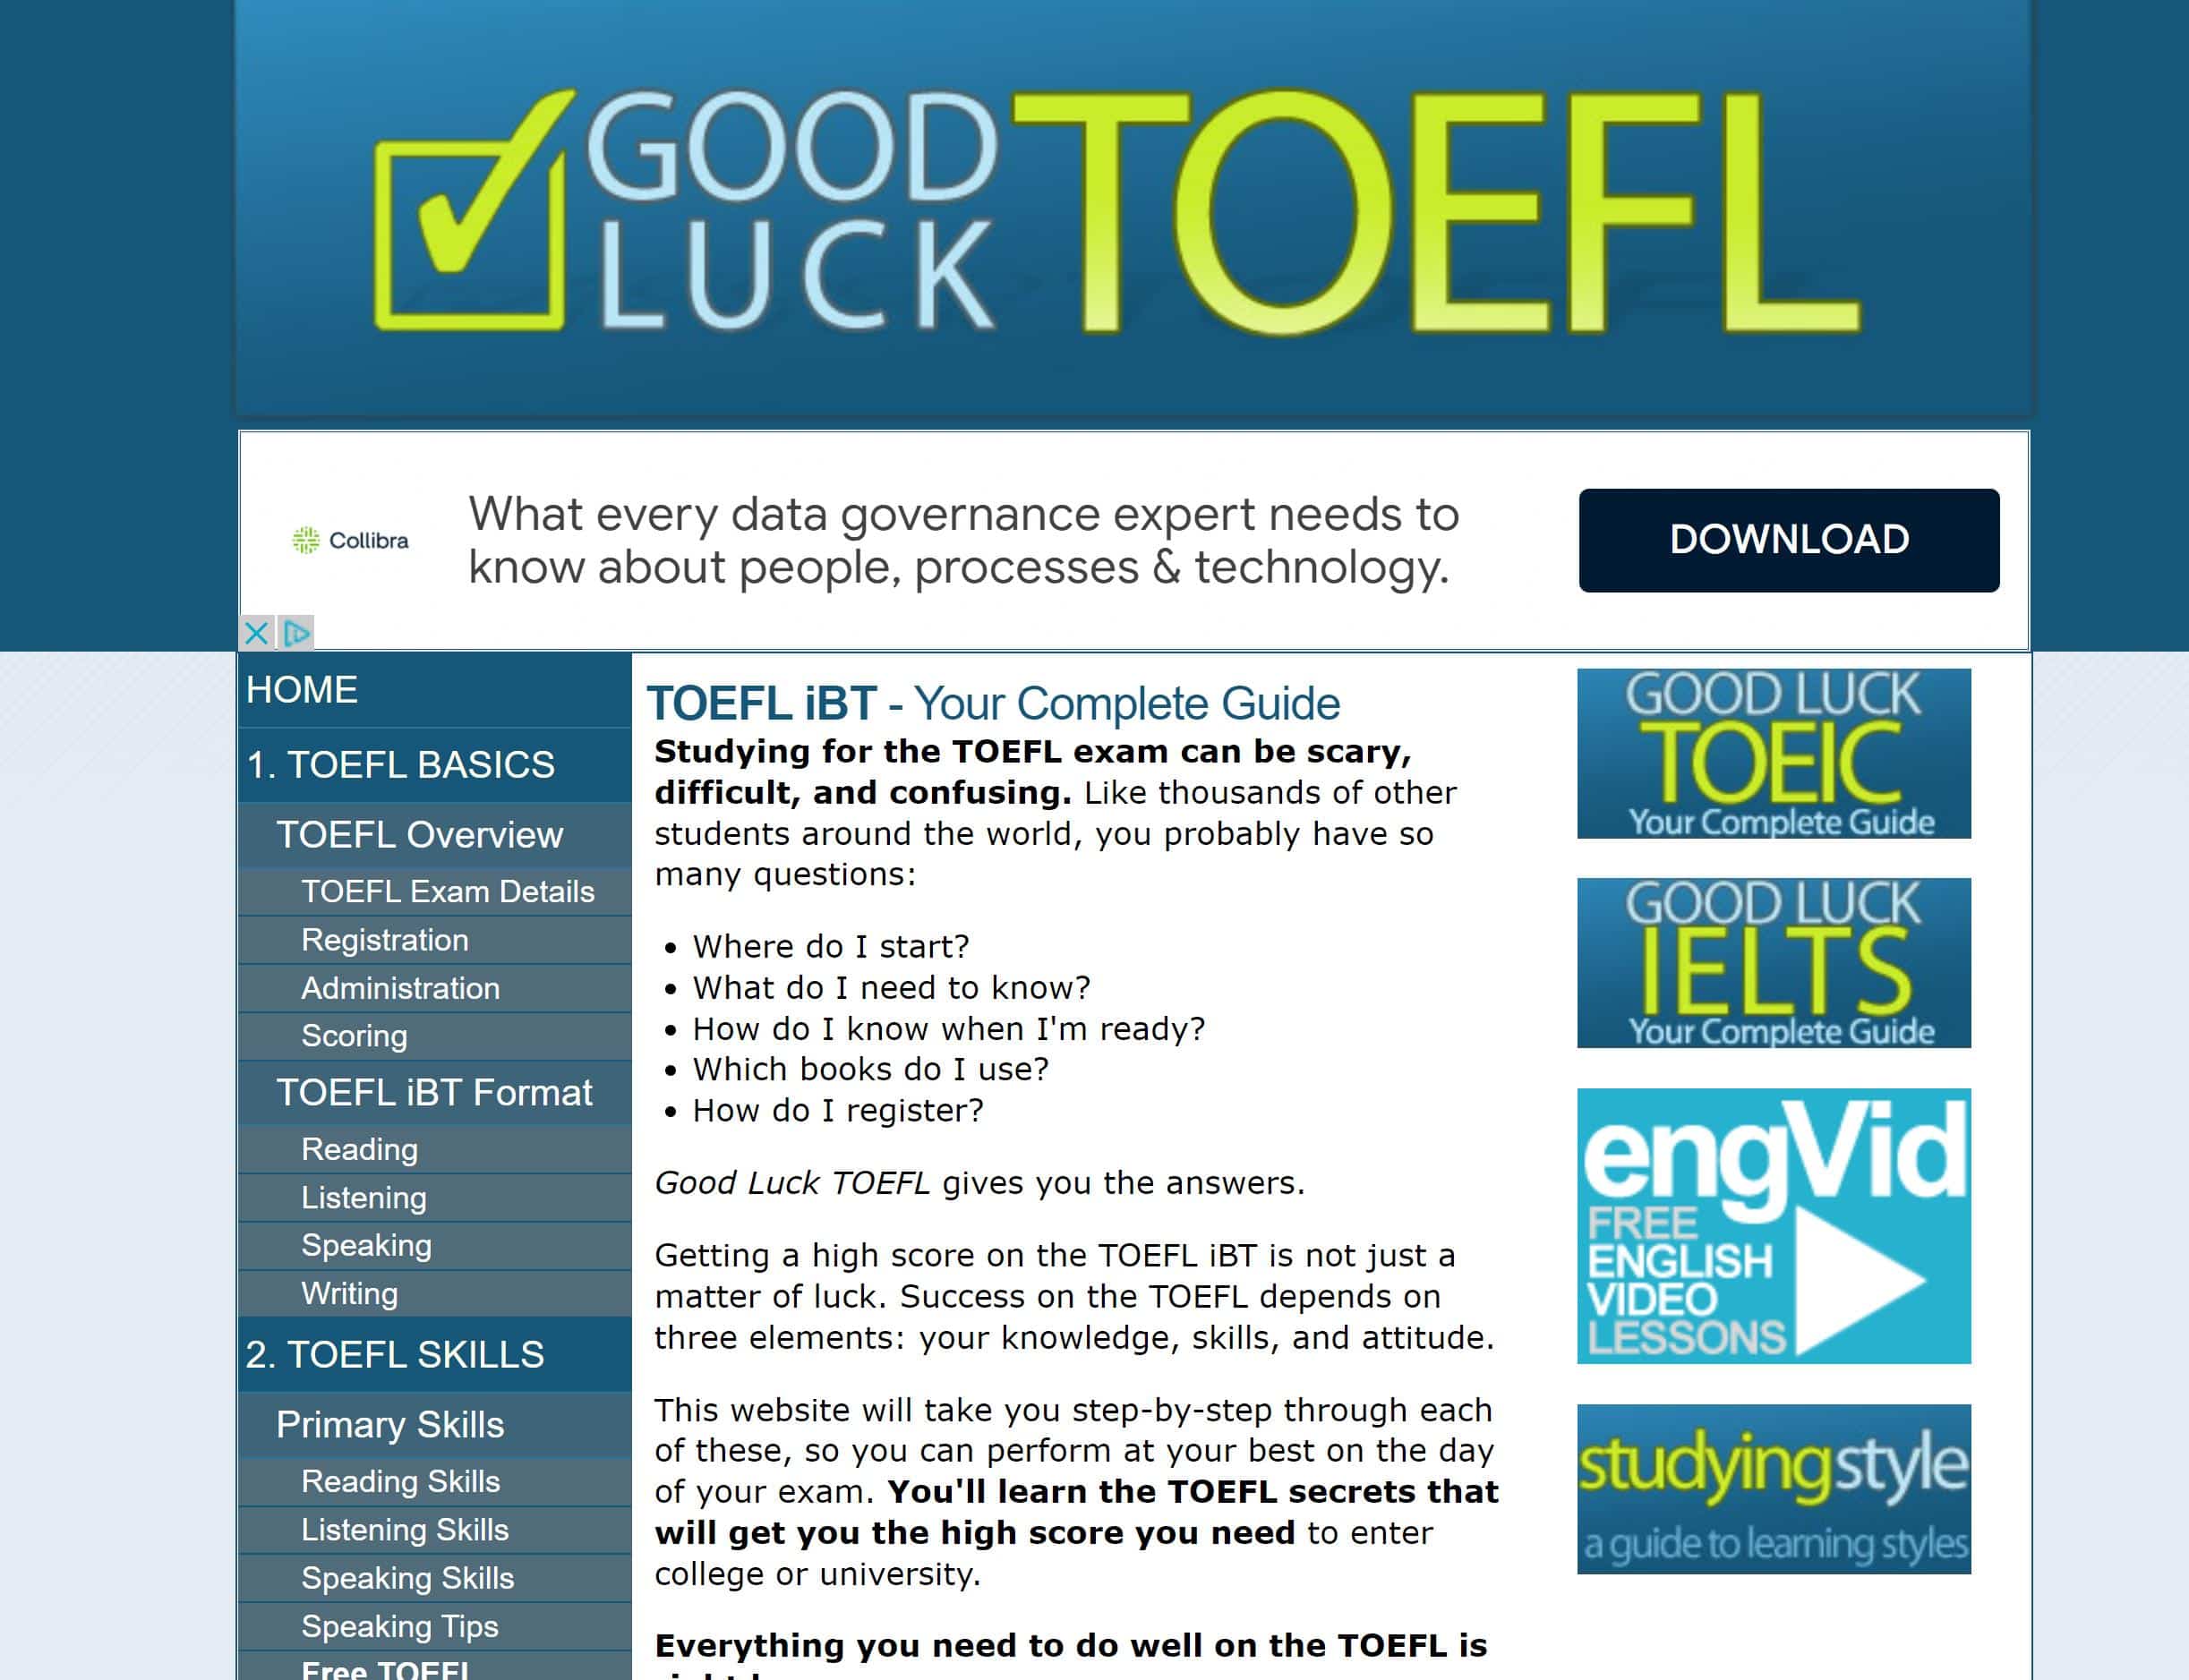 Good Luck TOEFL